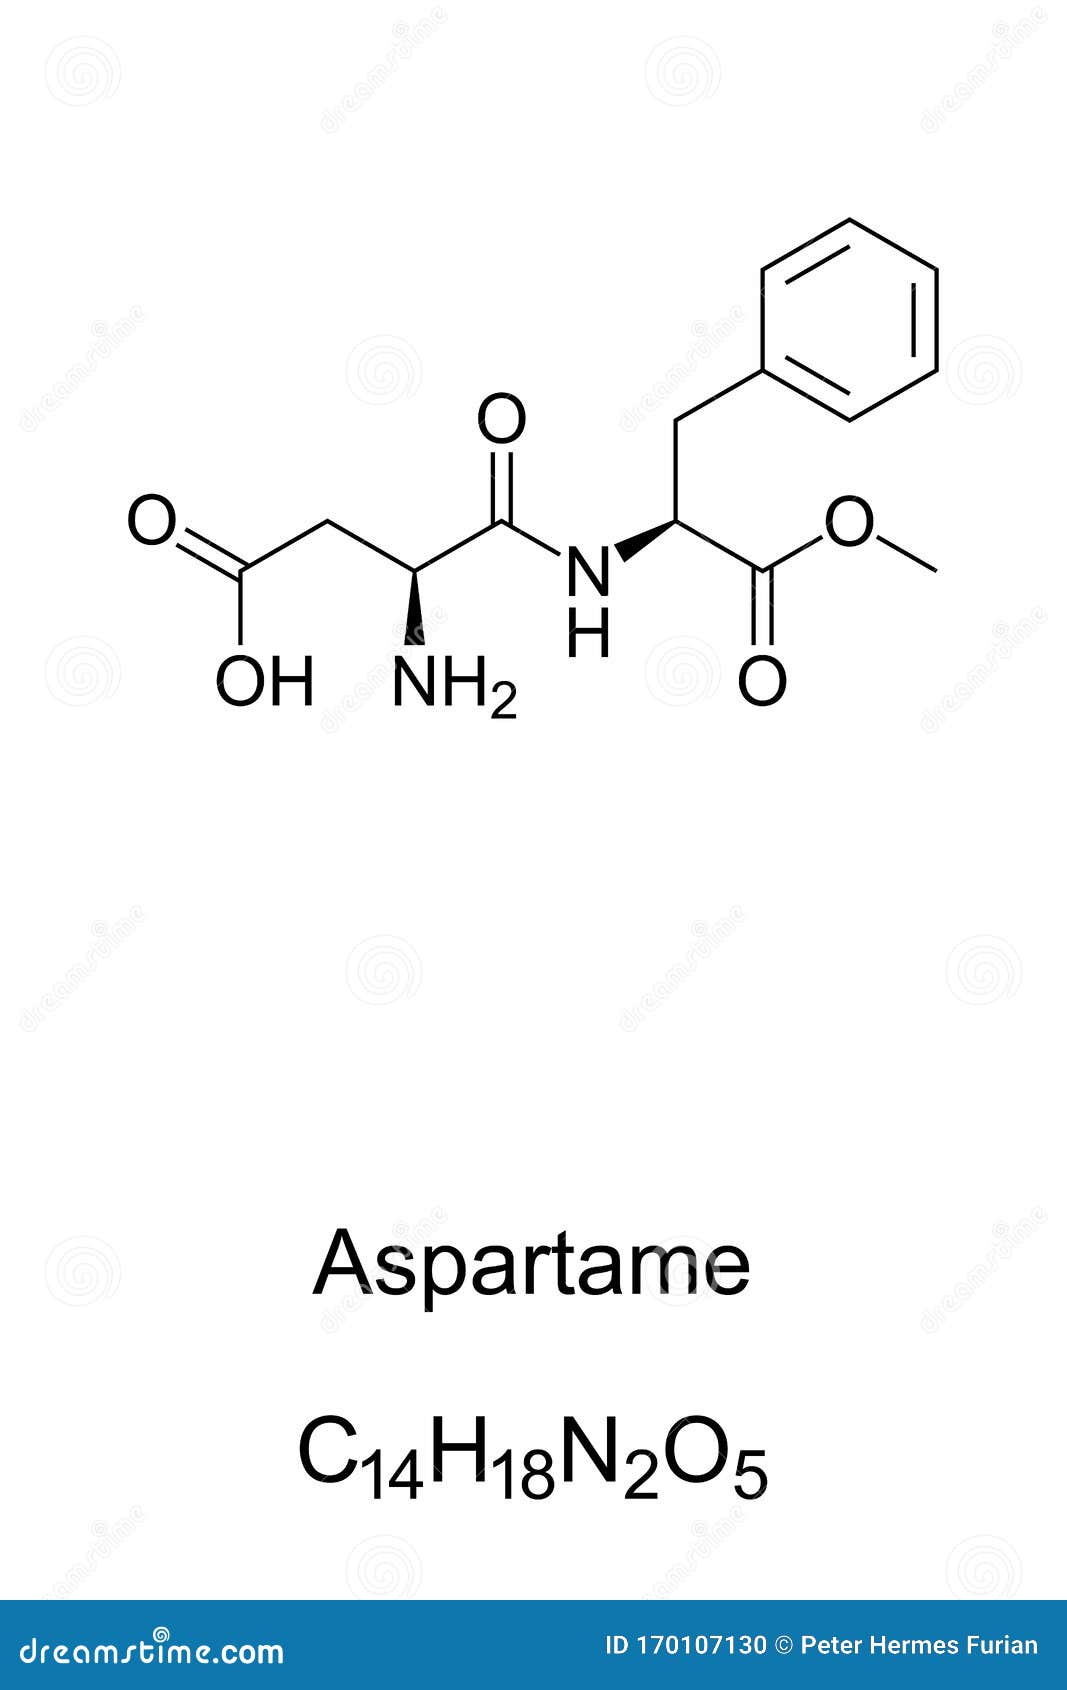 aspartame sugar substitute molecule, skeletal formula